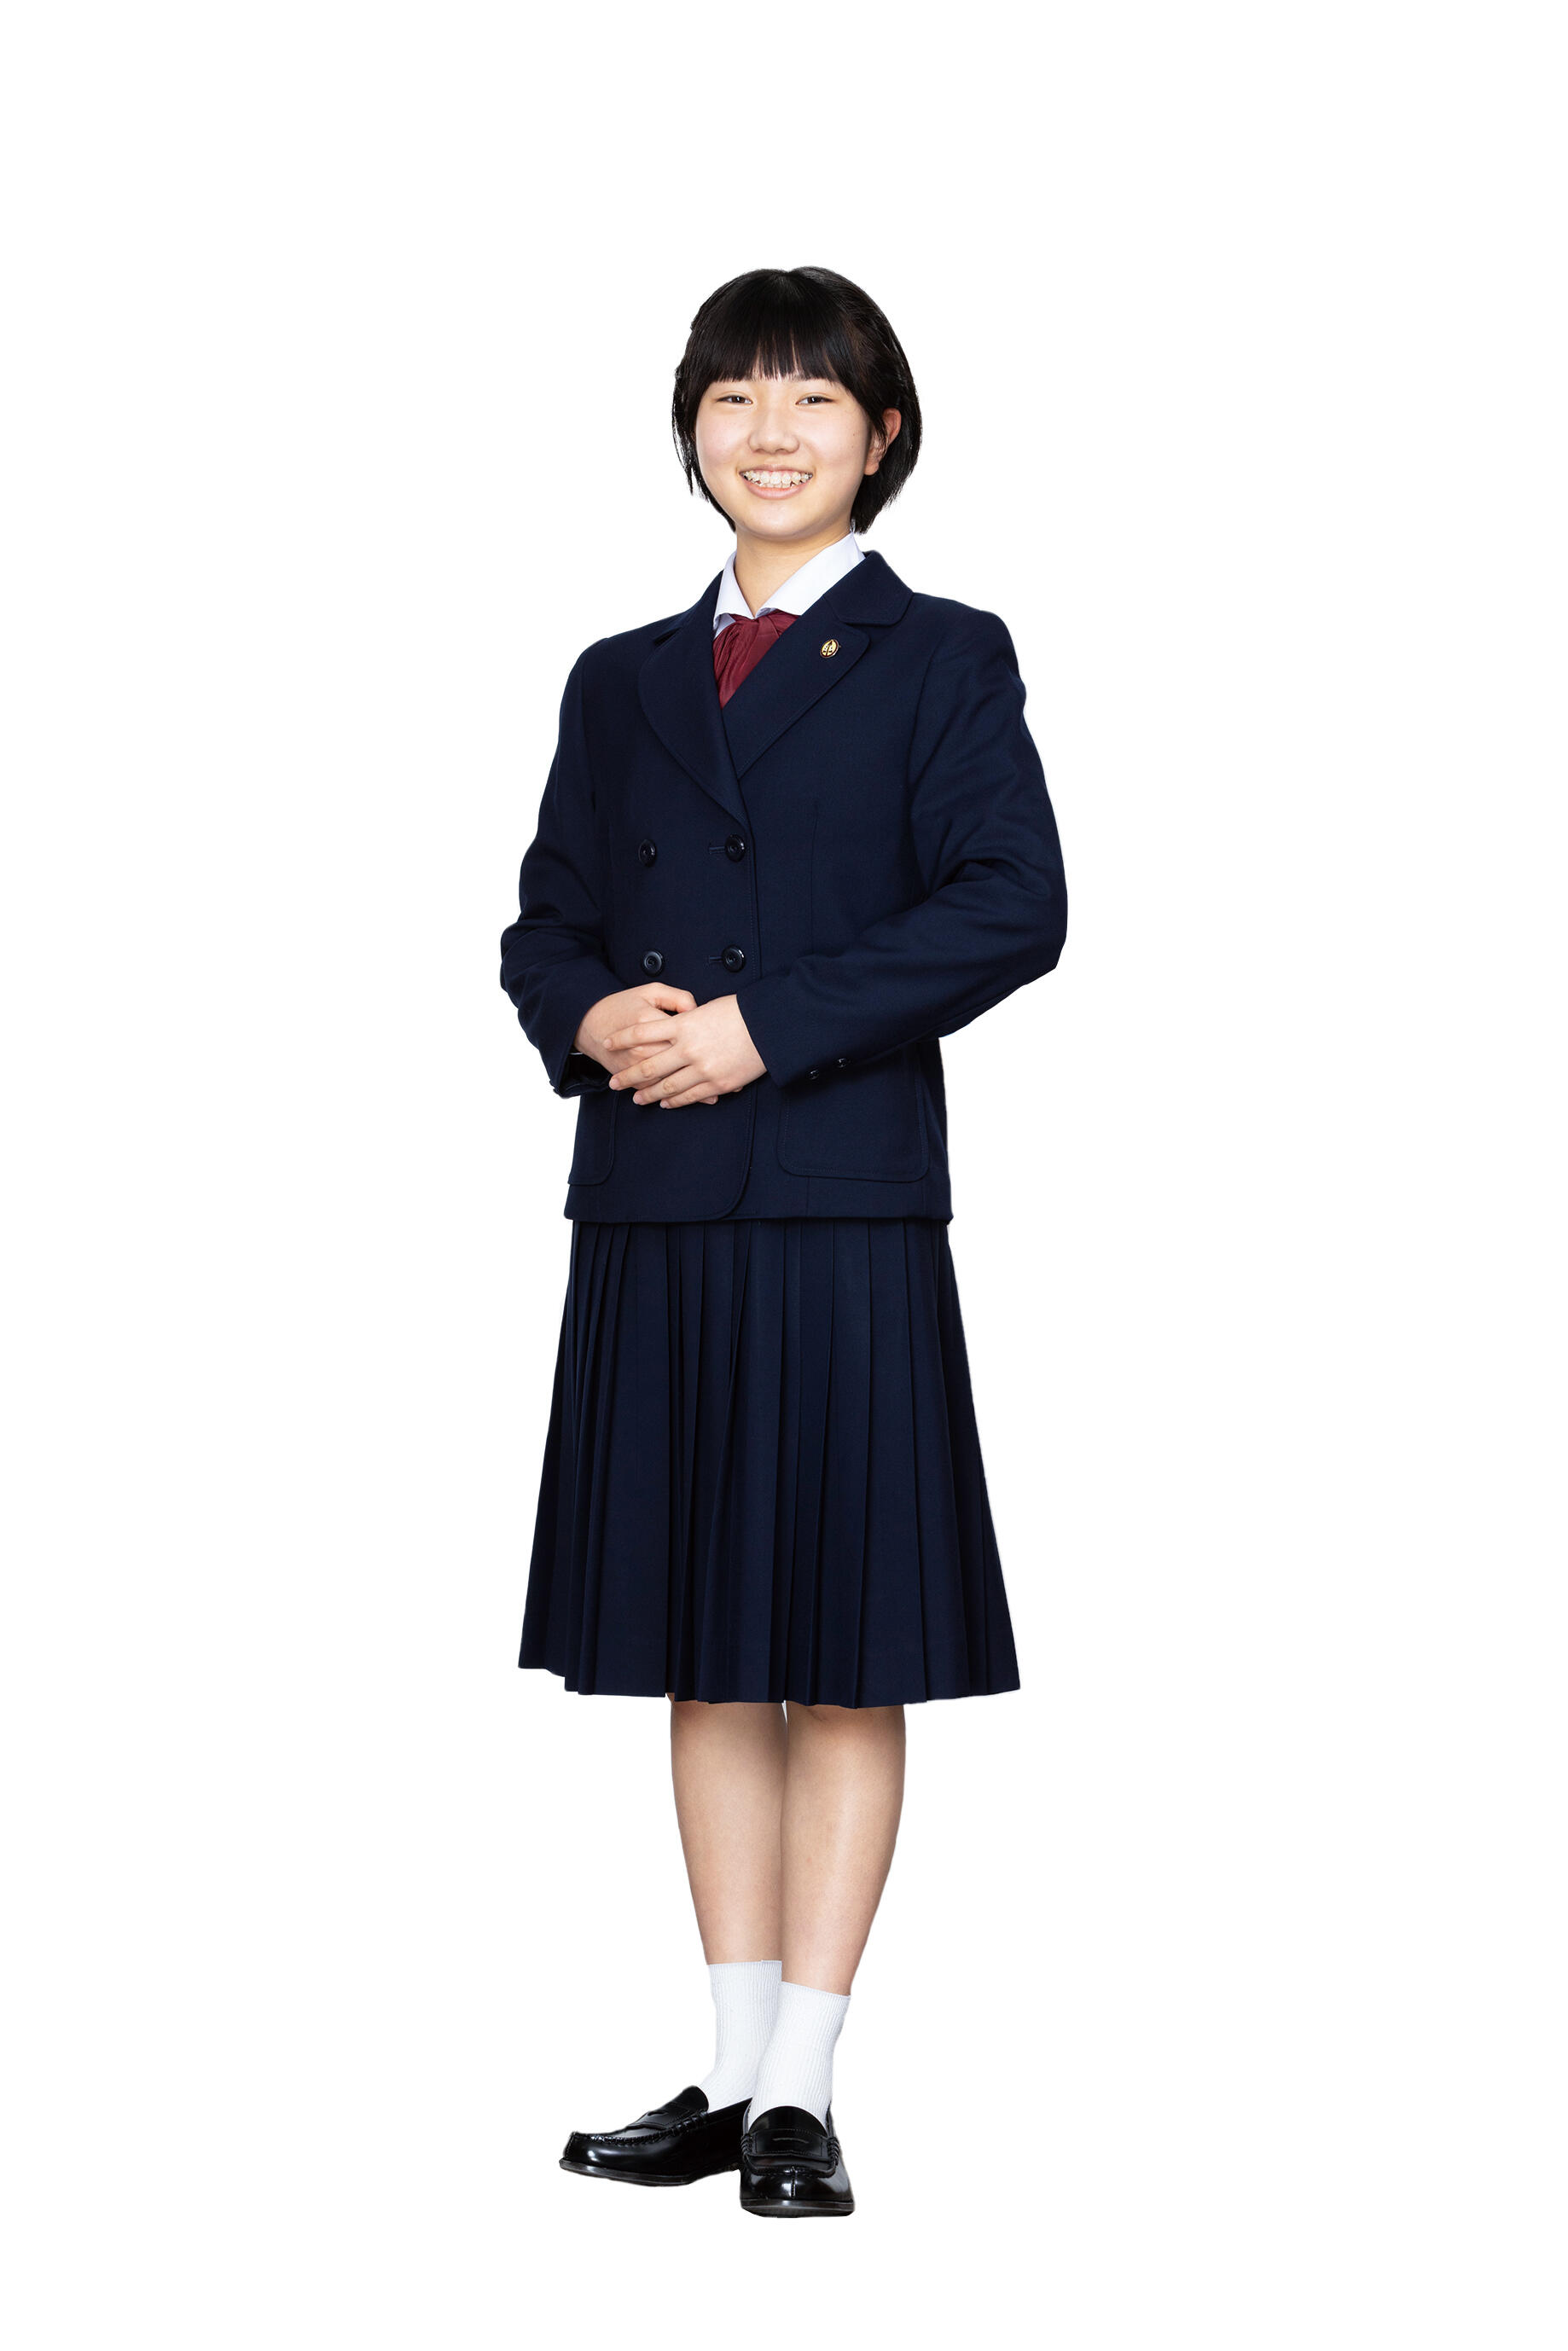 中学生 女子 制服 